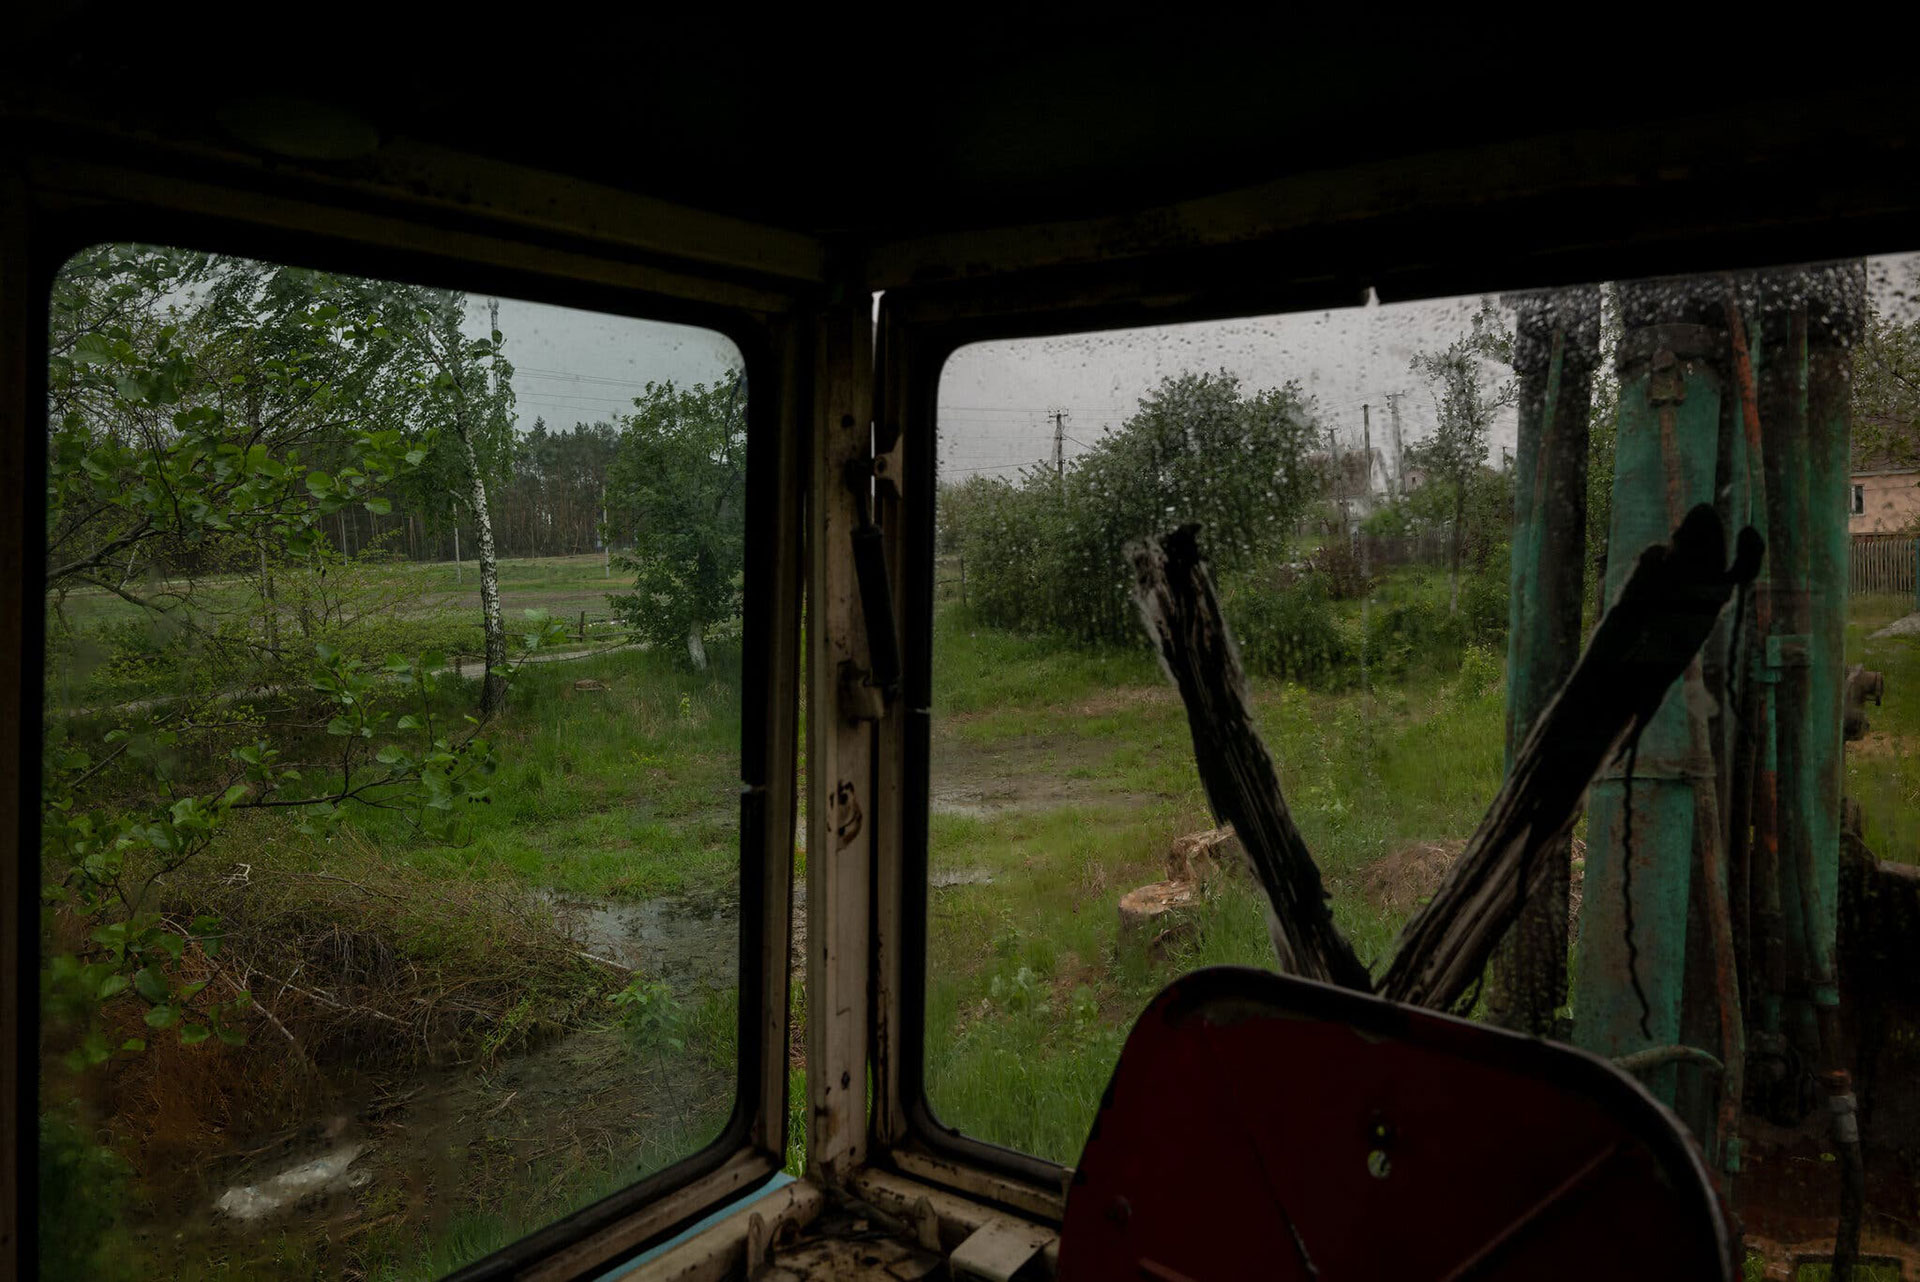 Una excavadora utilizada por las fuerzas rusas para hacer trincheras, en un pequeño pueblo cerca de Borodianka. Una “V” está pintada en la ventana trasera, una letra que se ha convertido en un símbolo de la invasión rusa de Ucrania (Nicole Tung para The New York Times)